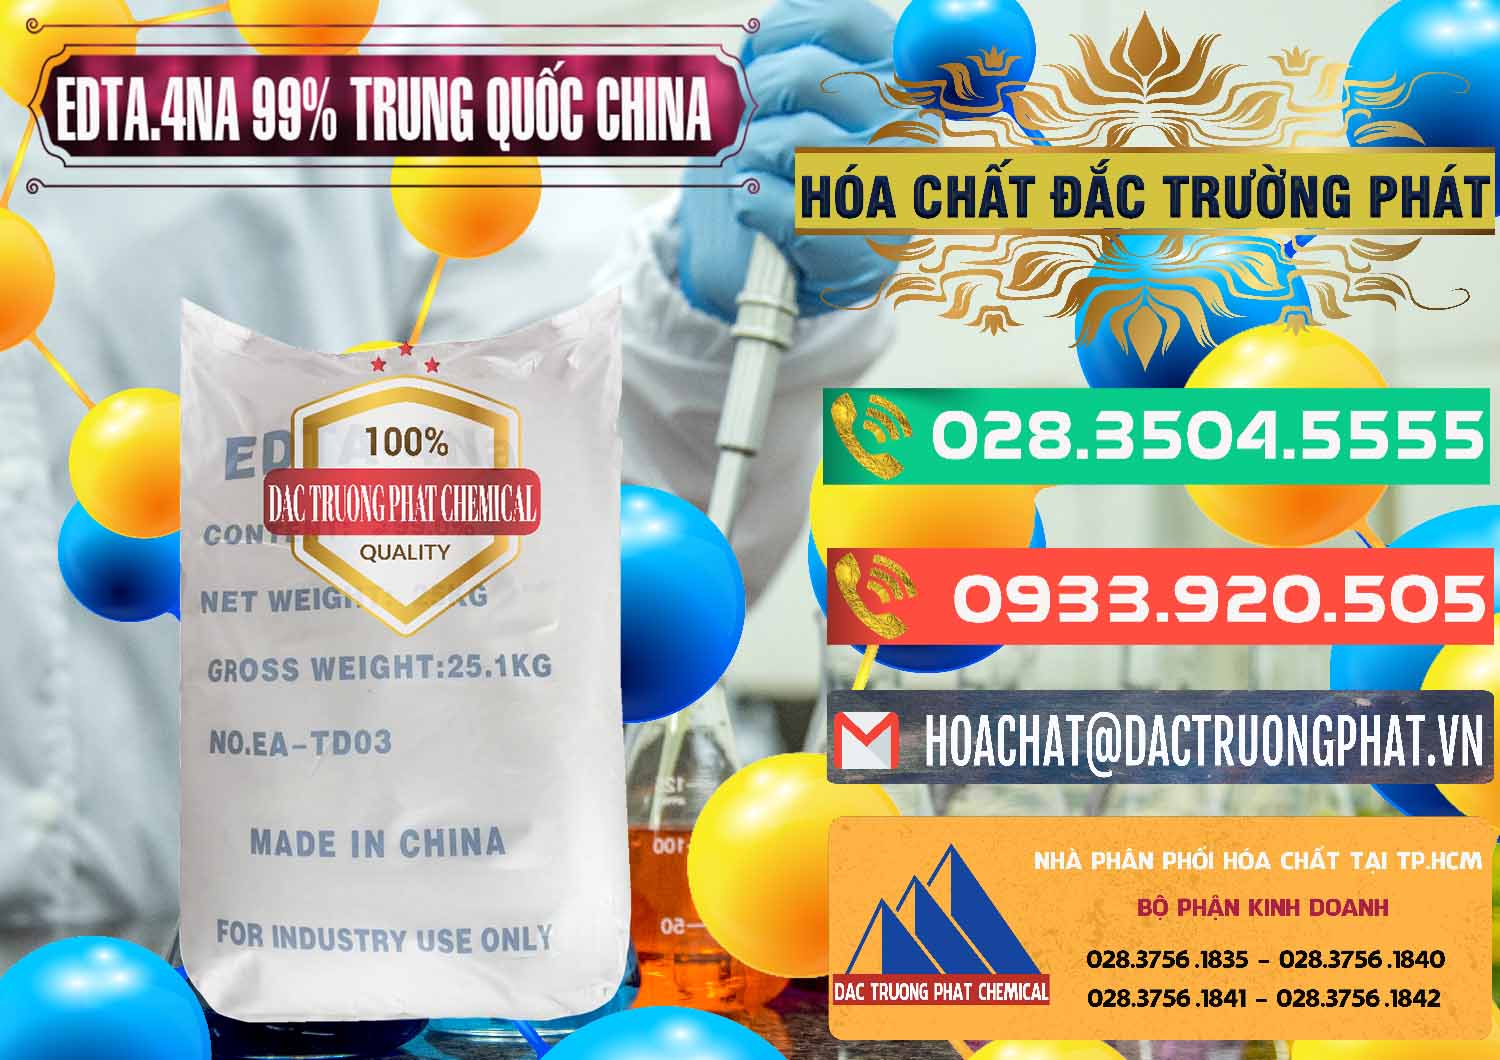 Công ty bán ( cung ứng ) EDTA.4NA - EDTA Muối 99% Trung Quốc China - 0292 - Công ty chuyên bán và phân phối hóa chất tại TP.HCM - congtyhoachat.com.vn